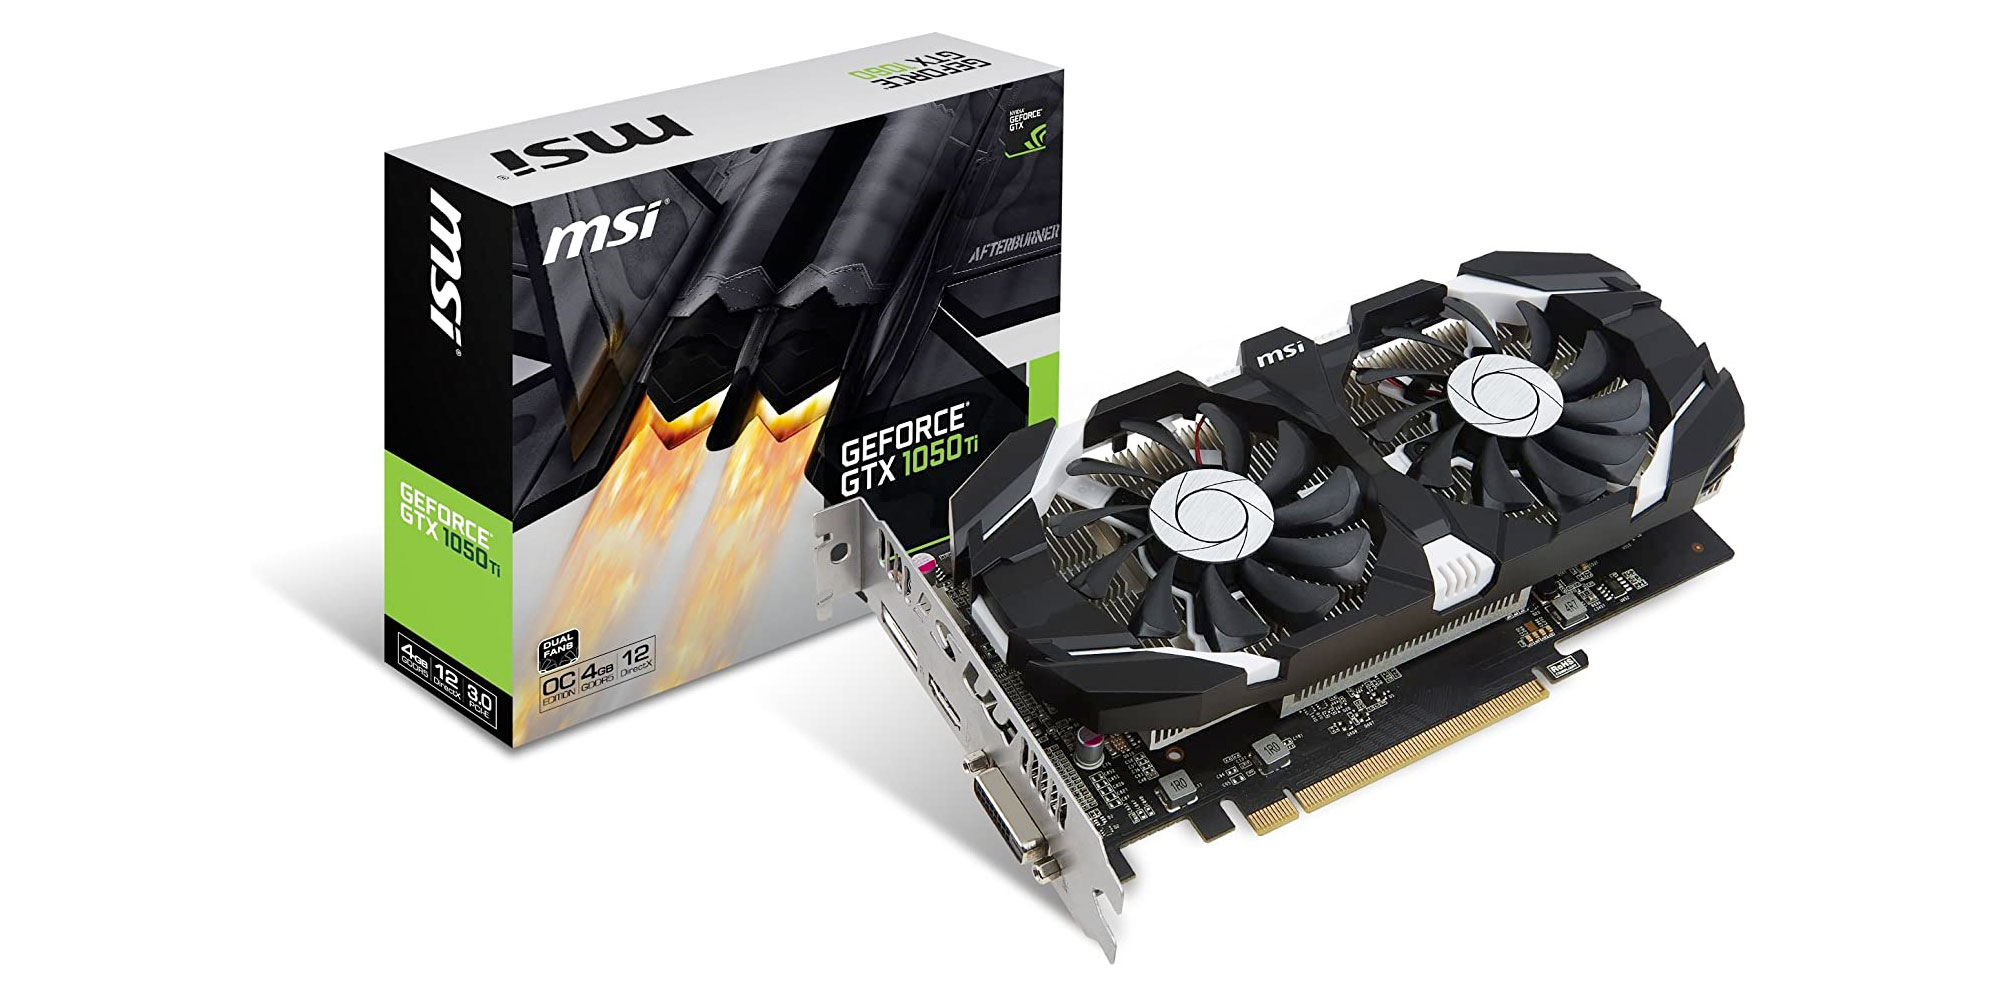 GTX 1050 Ti GPU from $117 shipped 